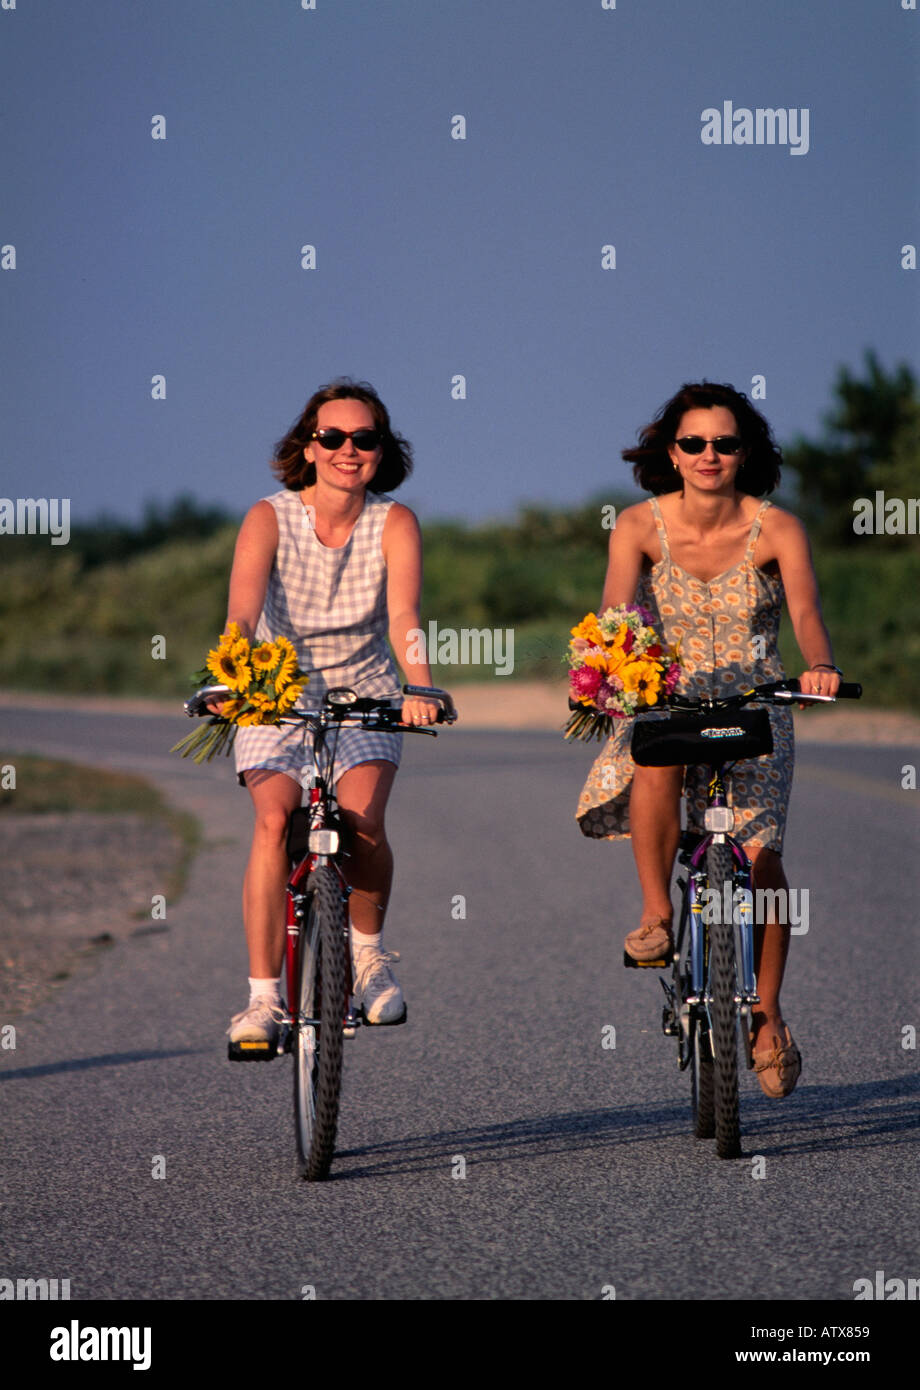 Zwei junge 25 auf 30 bis 35 Jahre alten Frauen sitzen auf dem Fahrrad mit Korb mit Blumen, Southampton, Long Island, New York State, USA Stockfoto